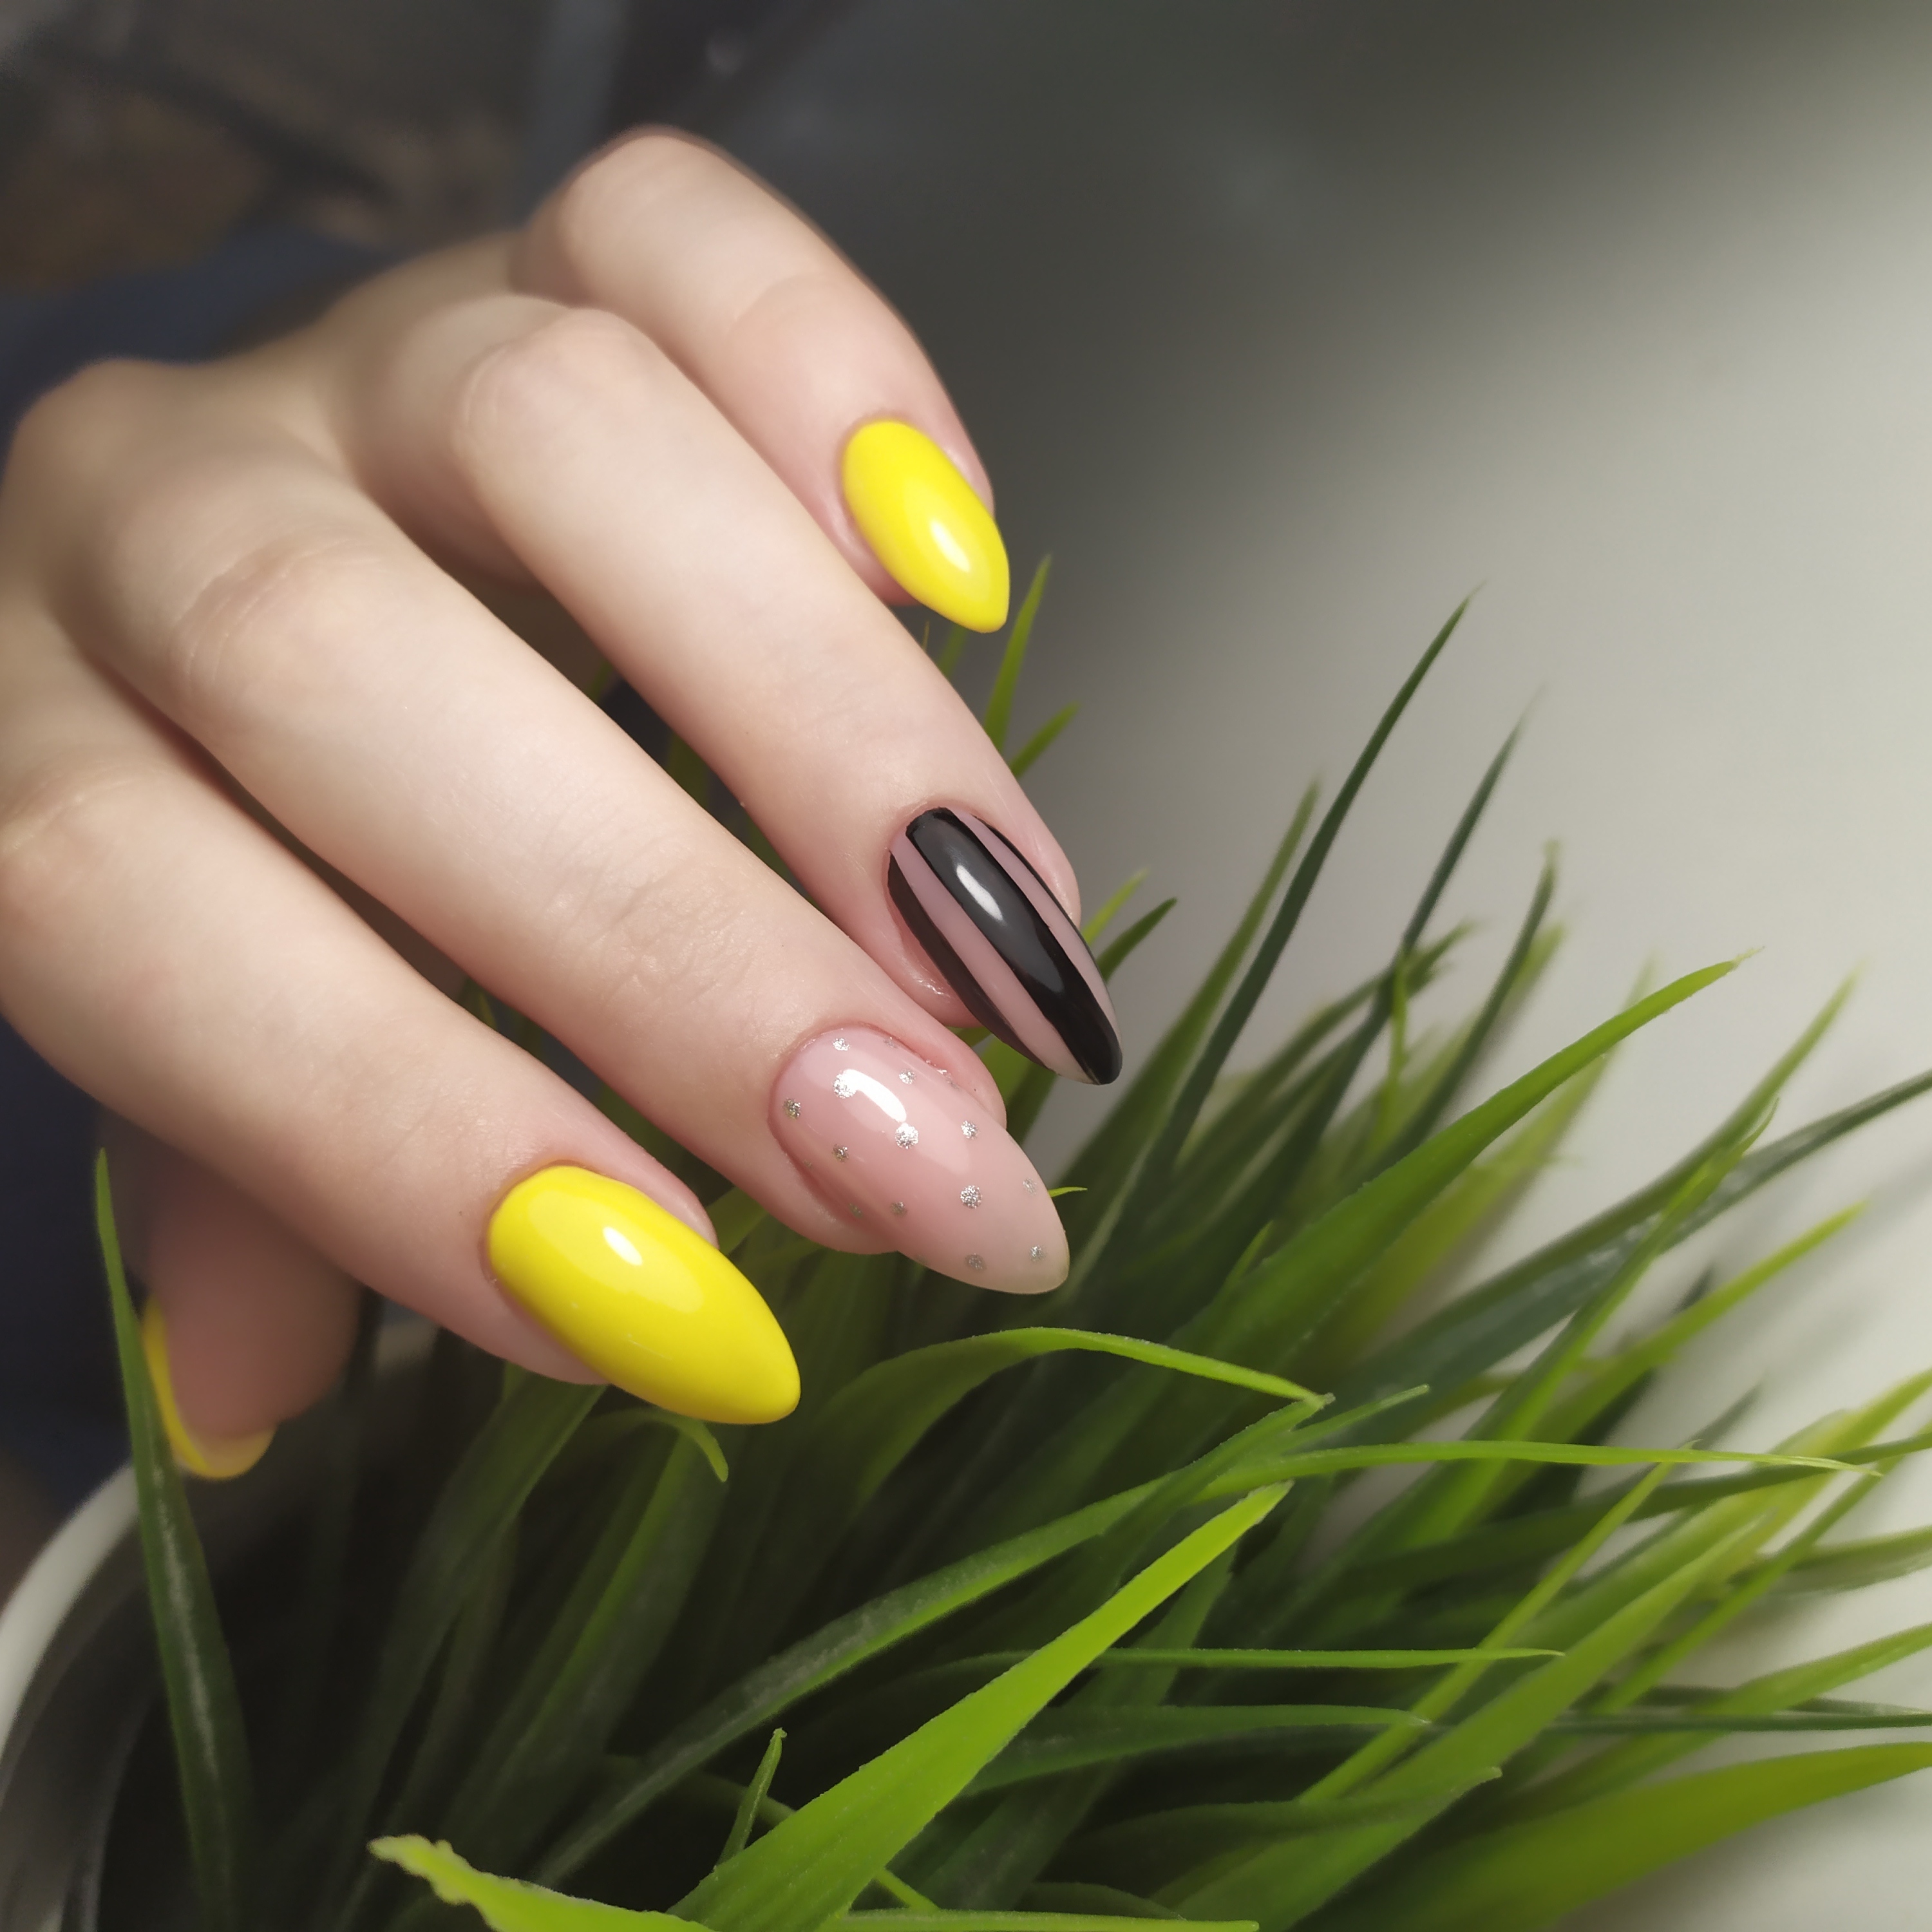 Маникюр с полосками в желтом цвете на длинные ногти.